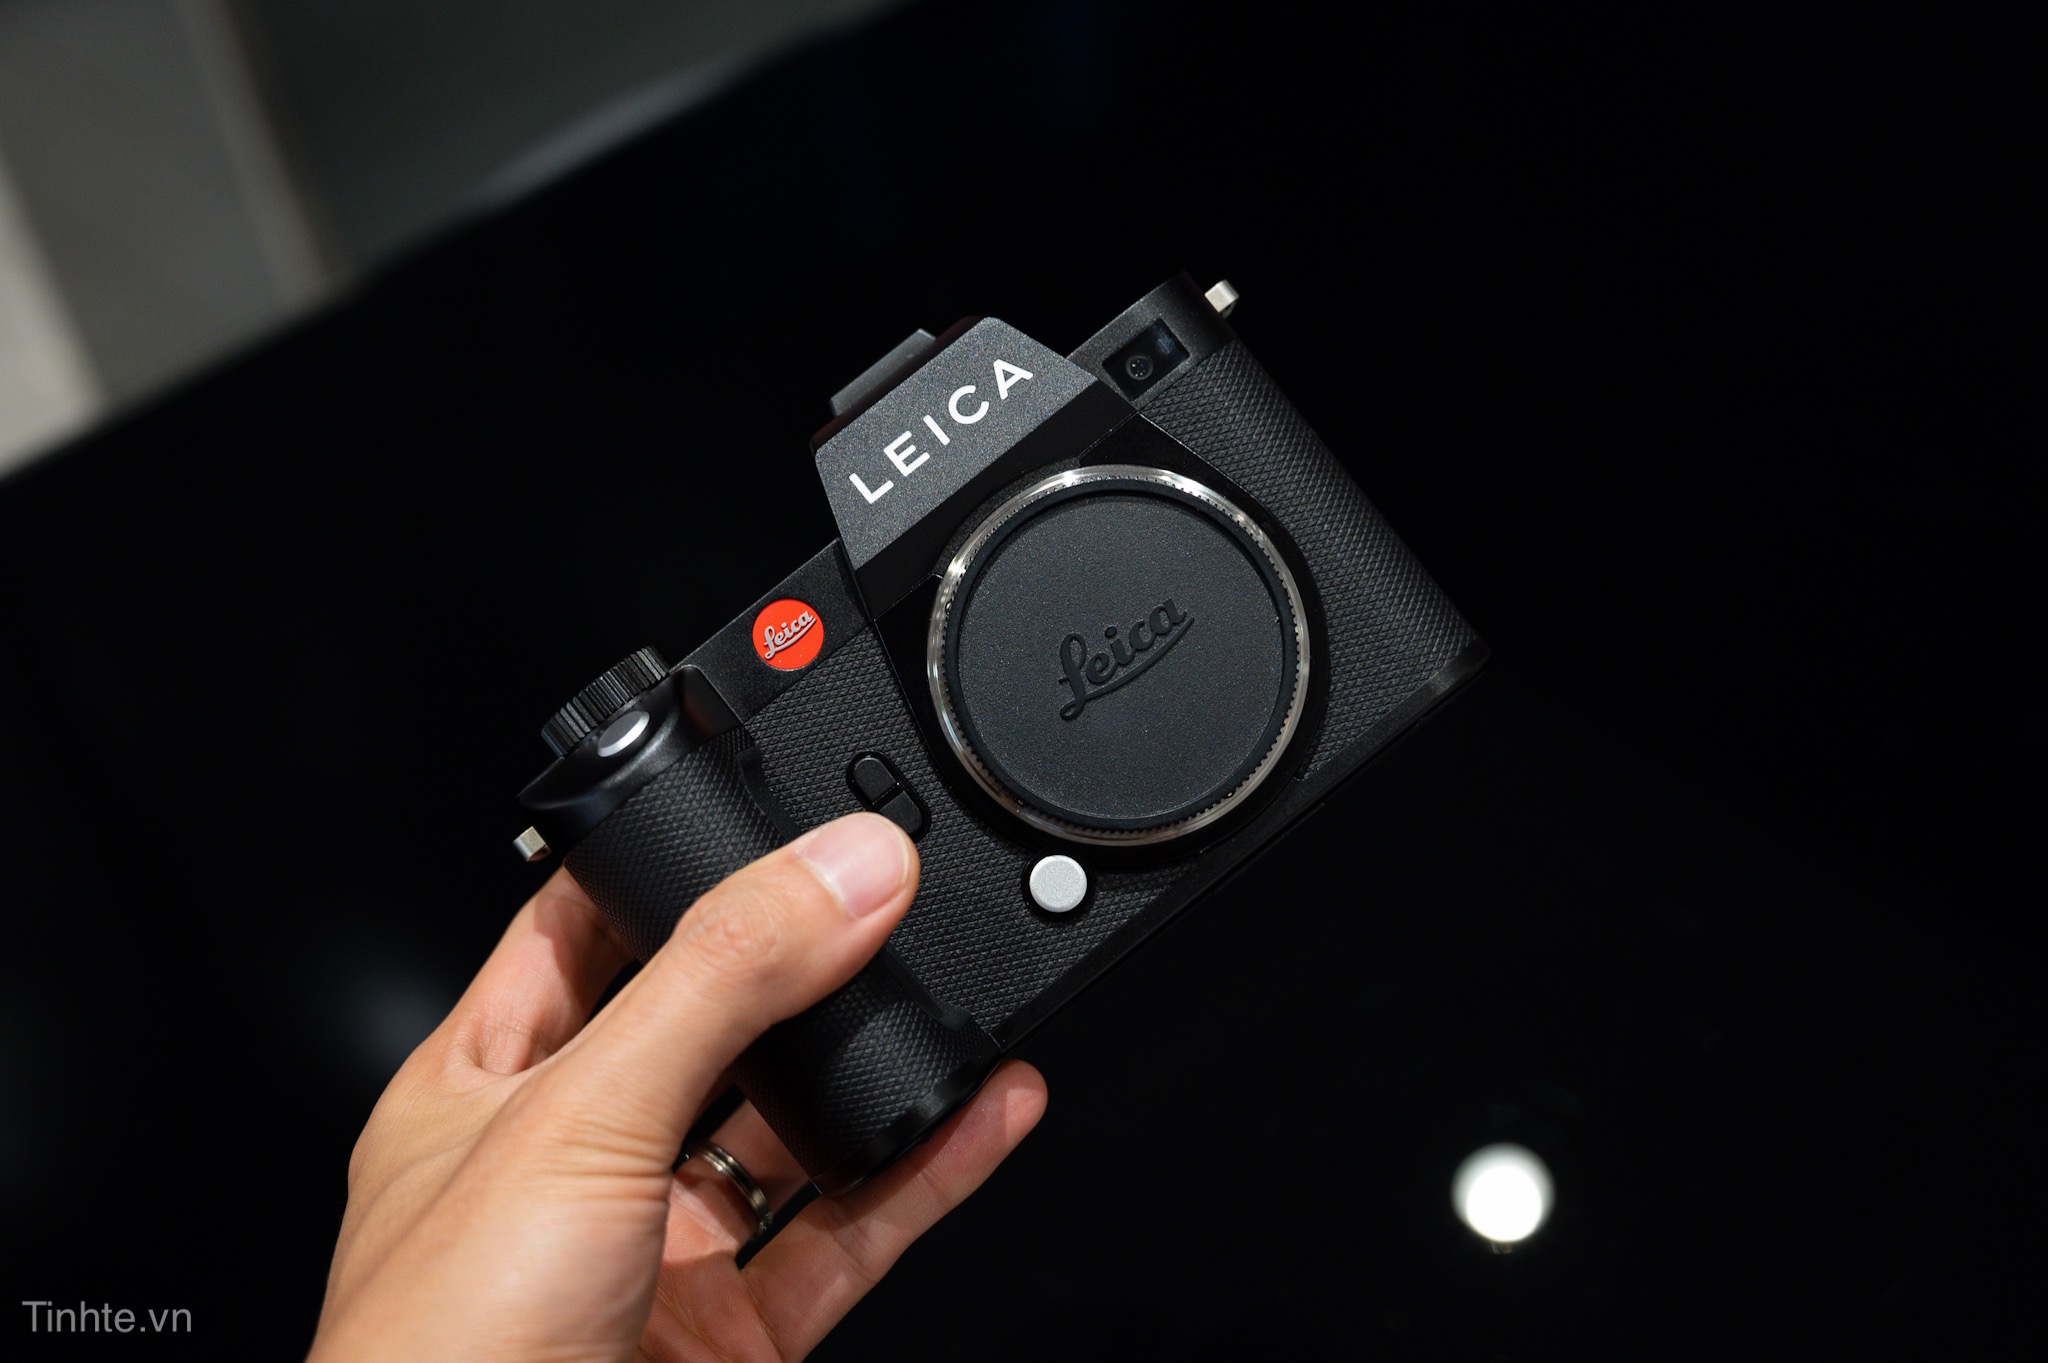 Leica SL3 sẽ có cảm biến như M11 và được ra mắt ngày 7/3 tới?